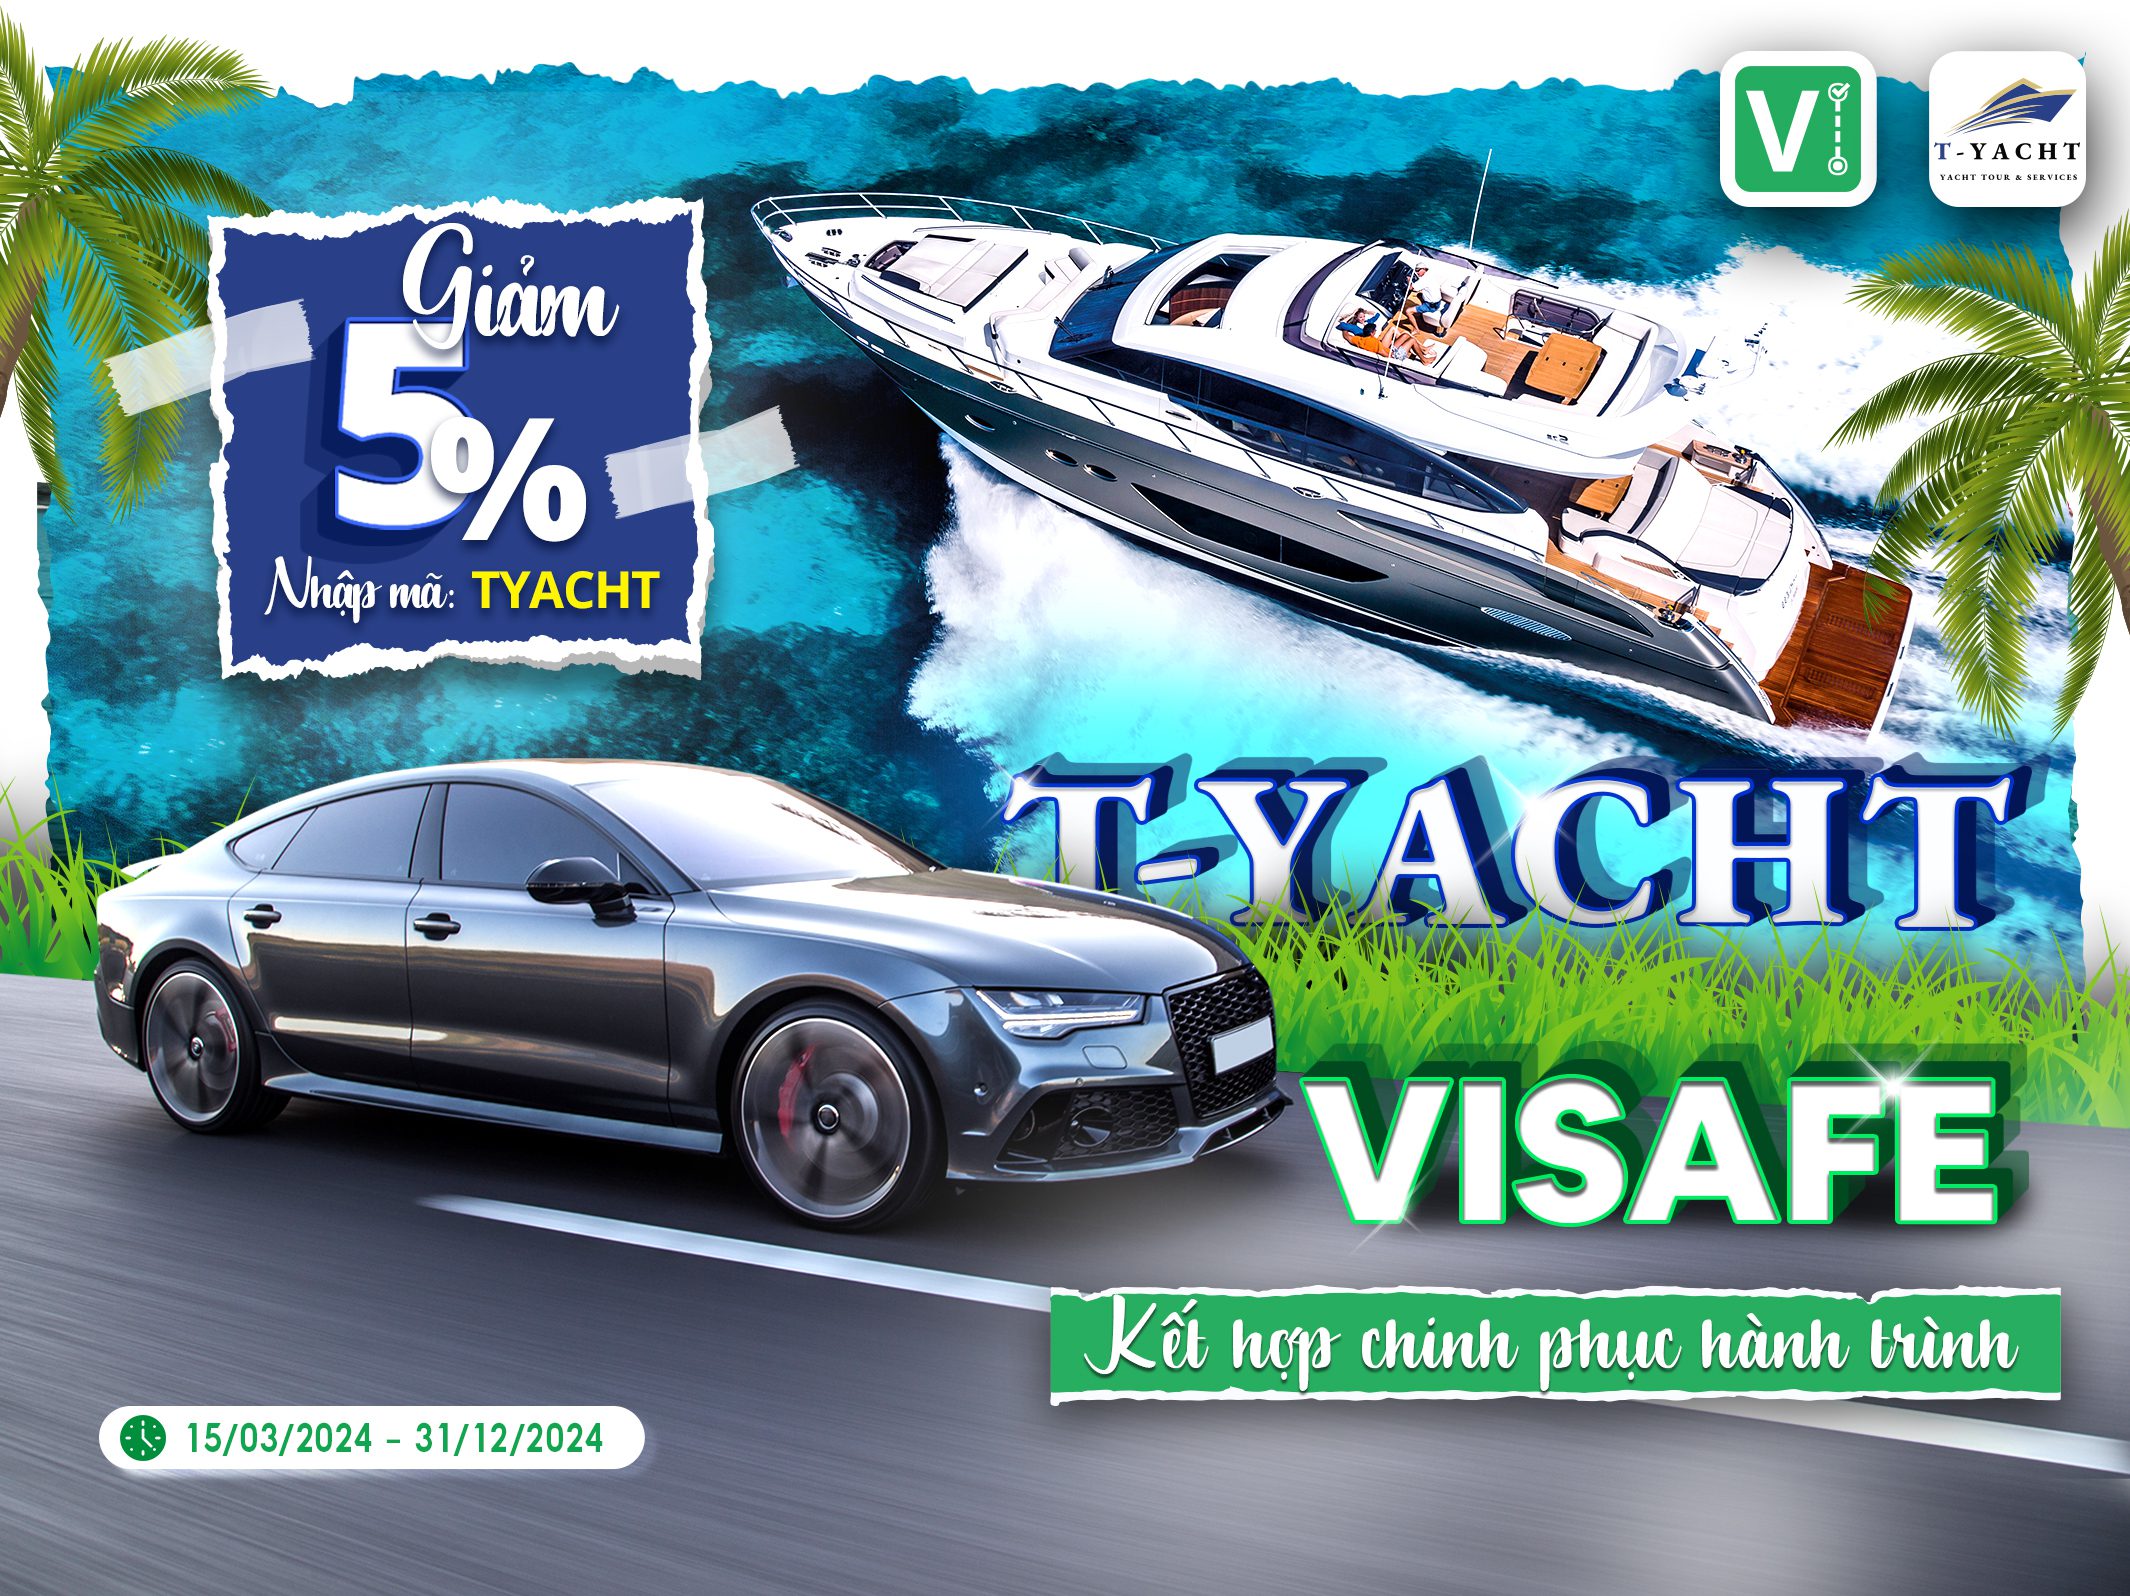 ViSafe và T-Yacht kết hợp chinh phục hành trình!